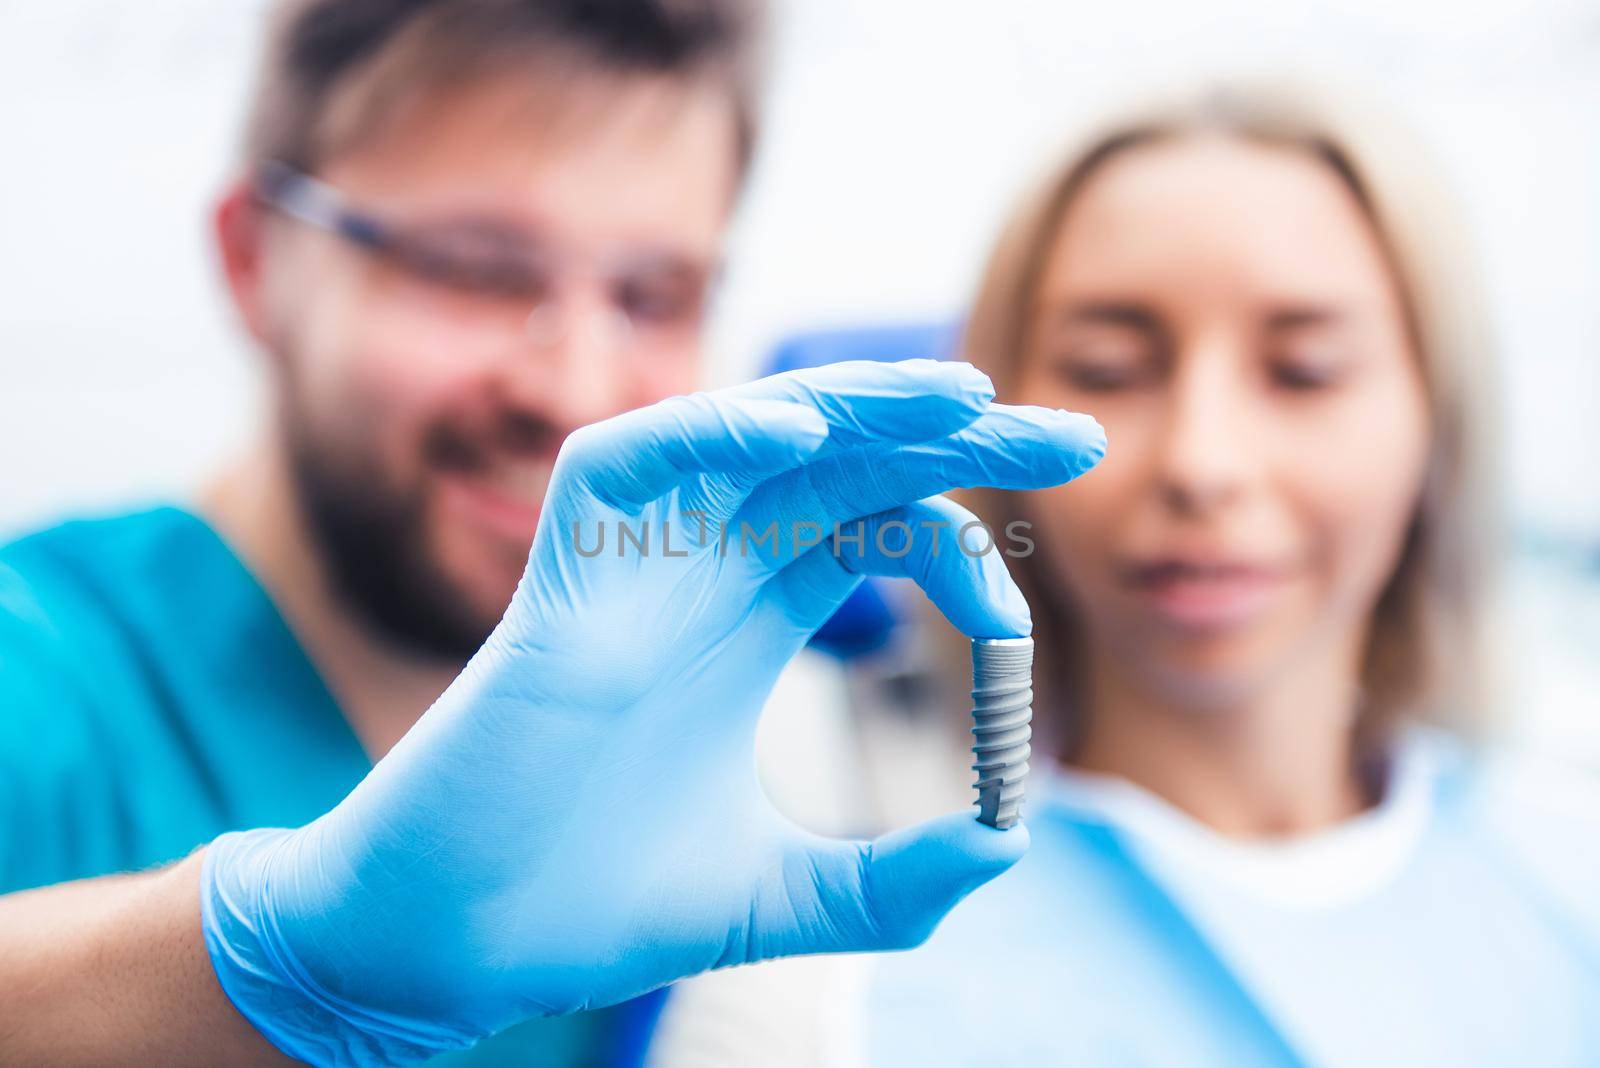 Dentist showing gray implant model by GekaSkr